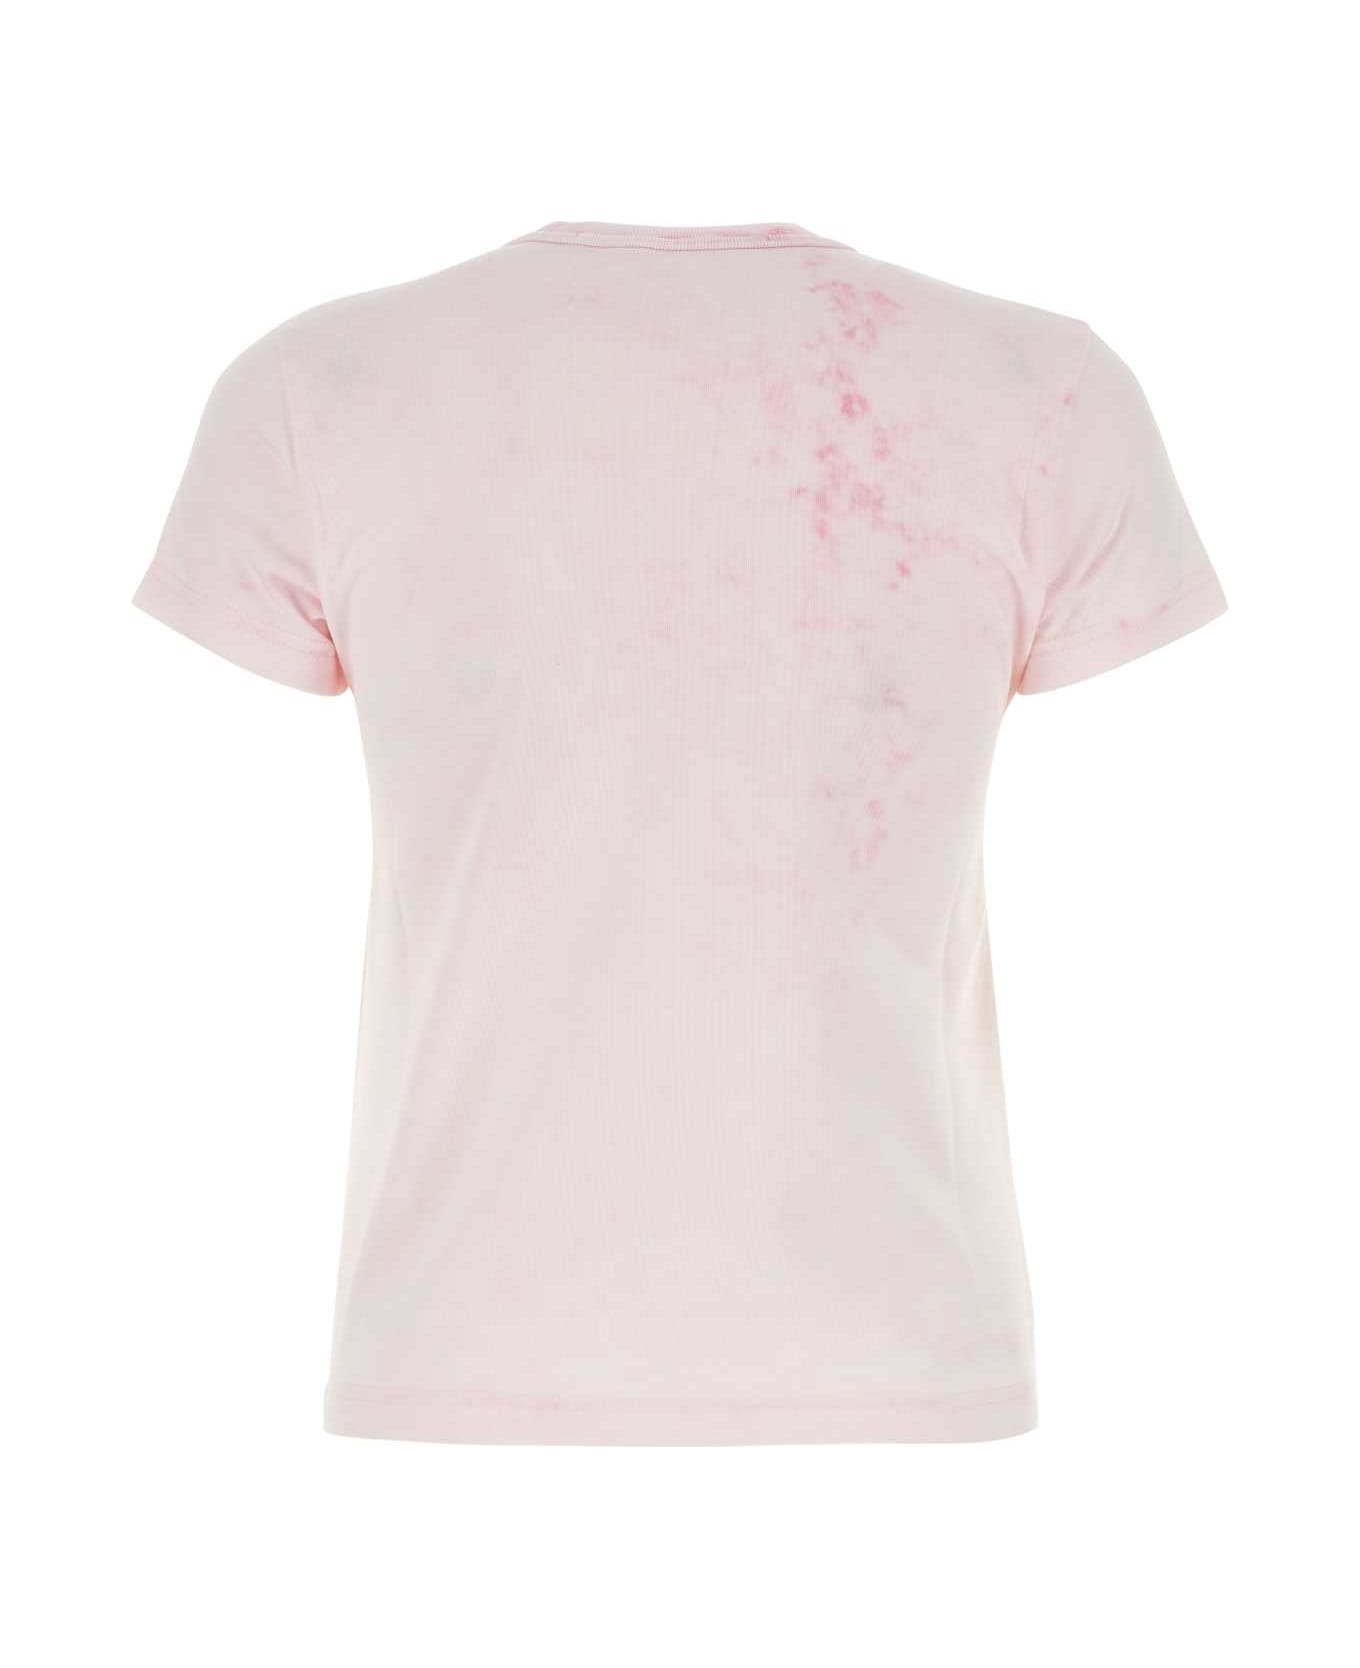 Alexander Wang Light Pink T-shirt - LTPINKBLEACHOUT